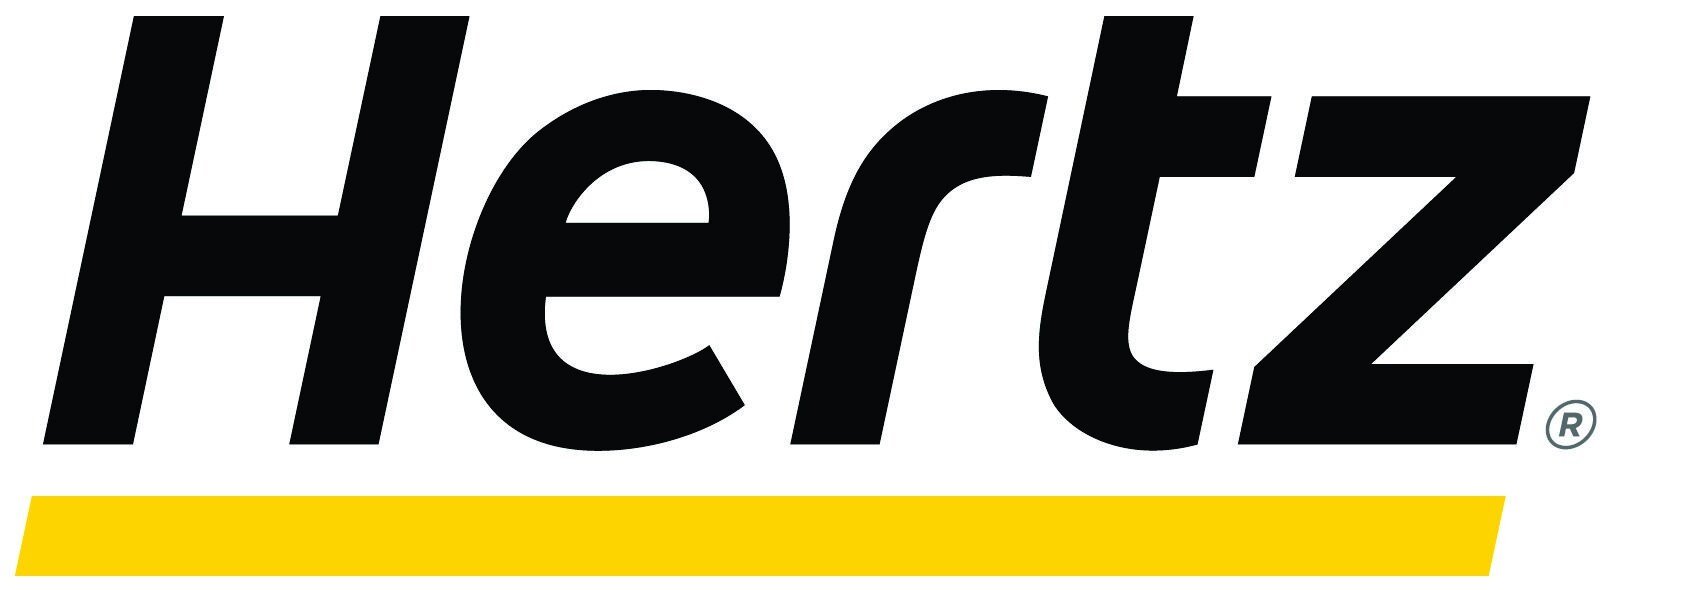 Hertz+Logo+Hi+Res.jpg